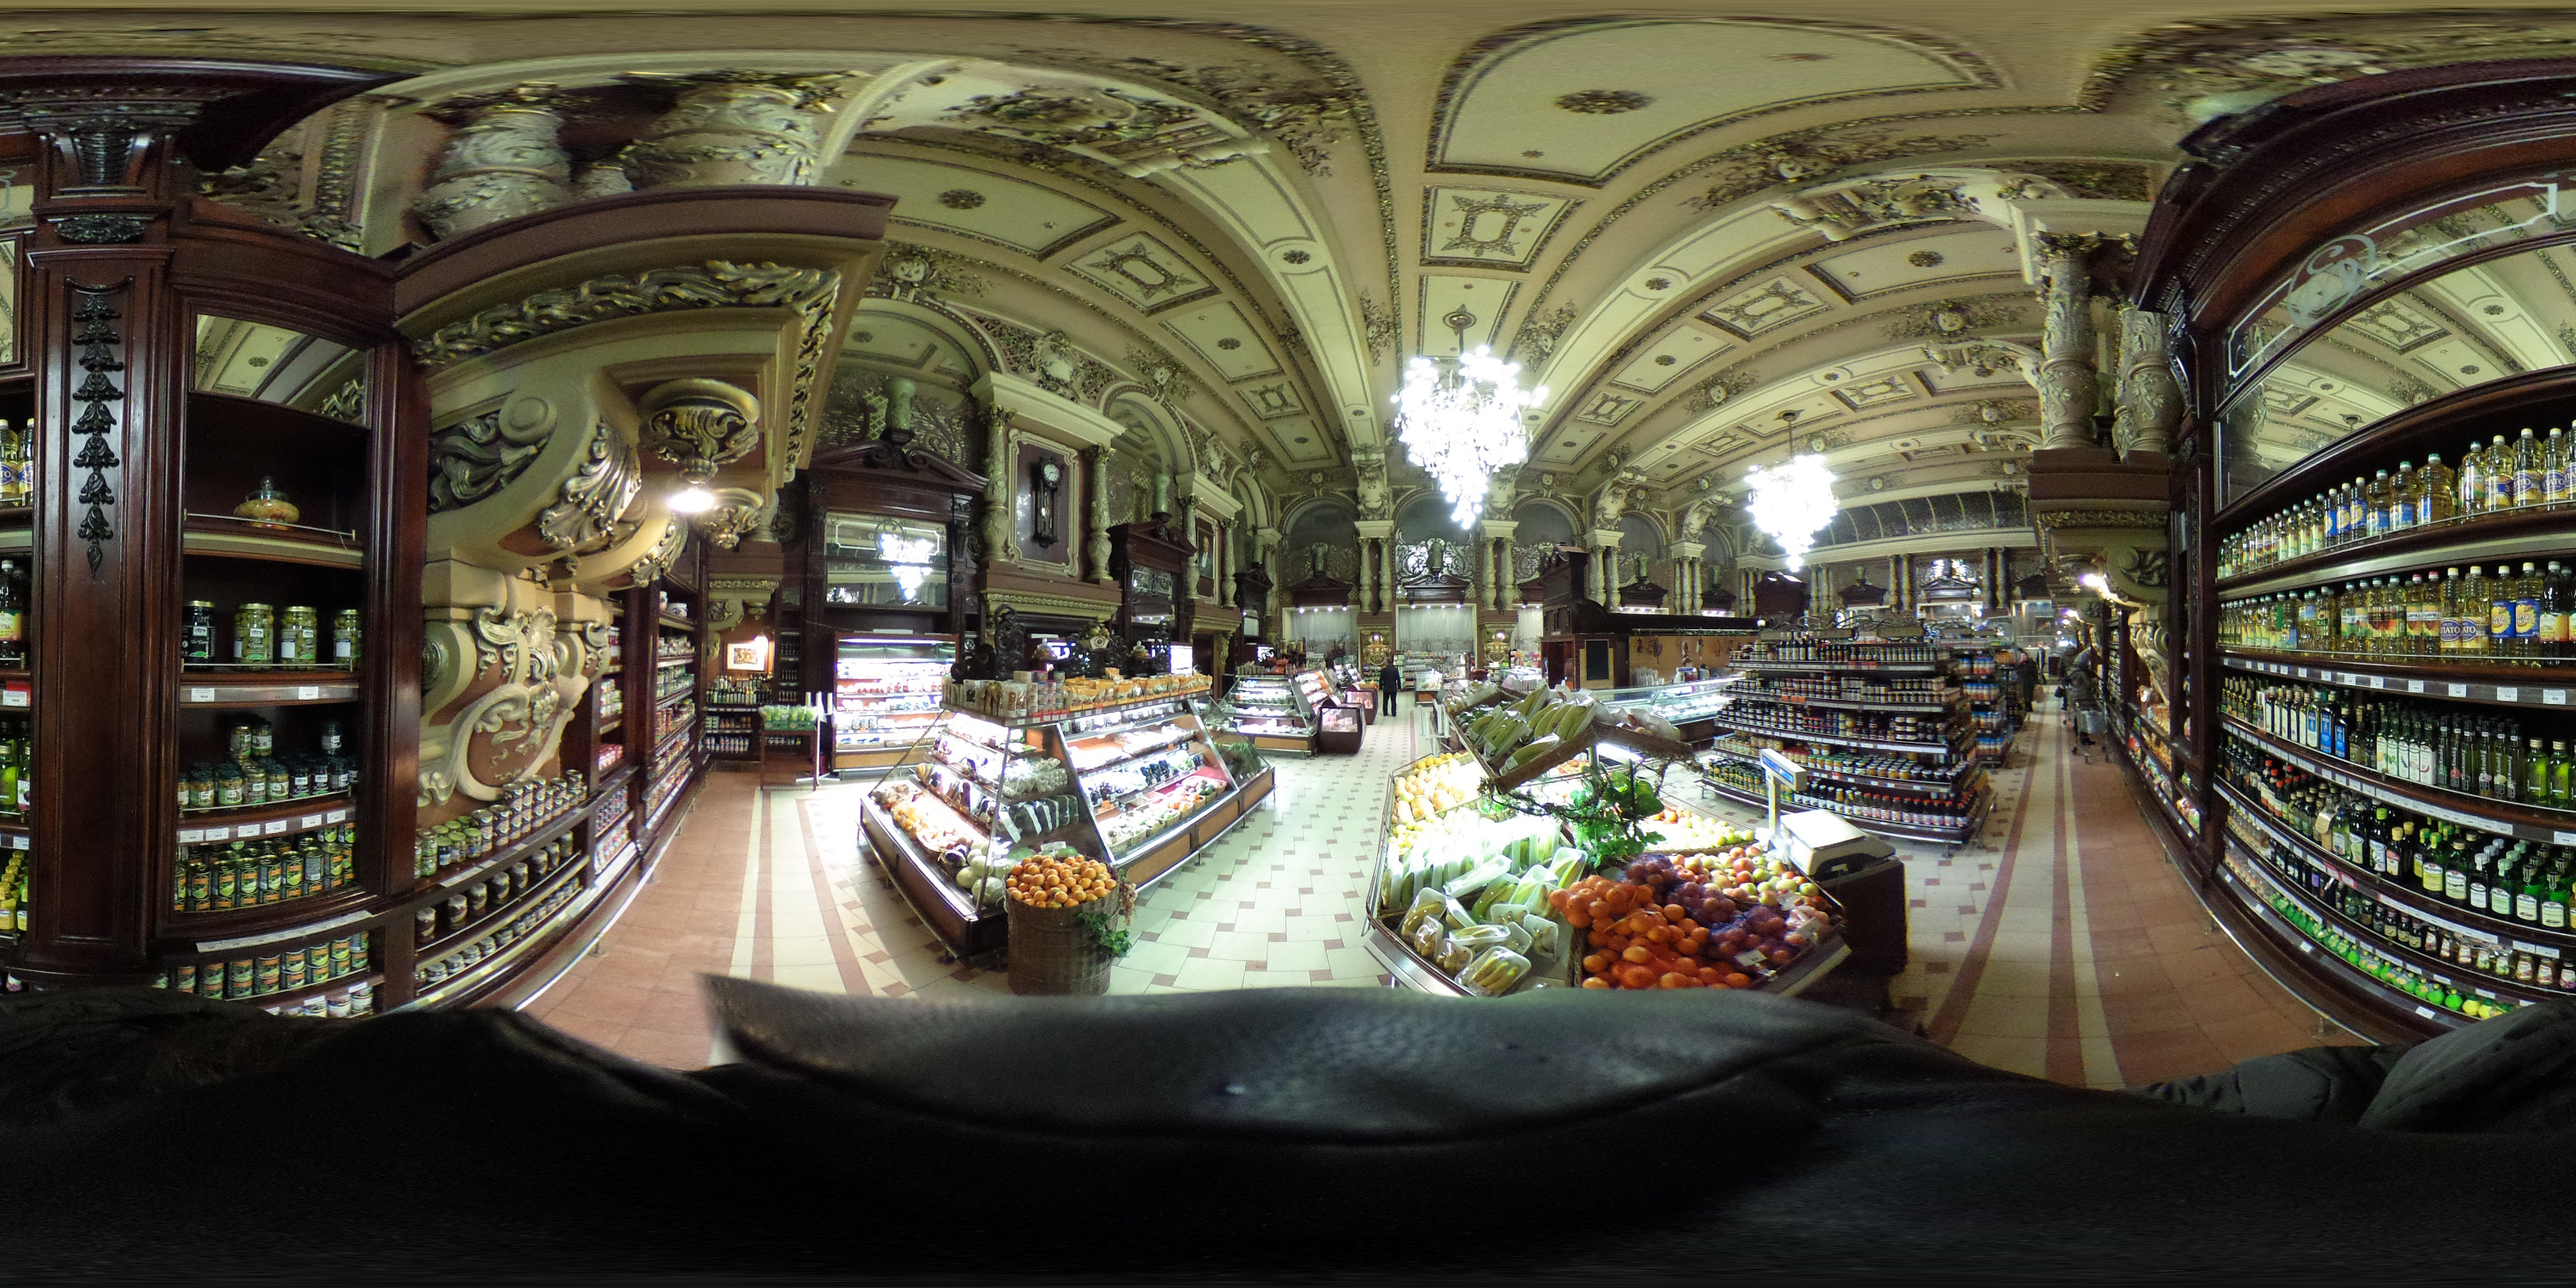 елисеевский магазин в москве в советское время